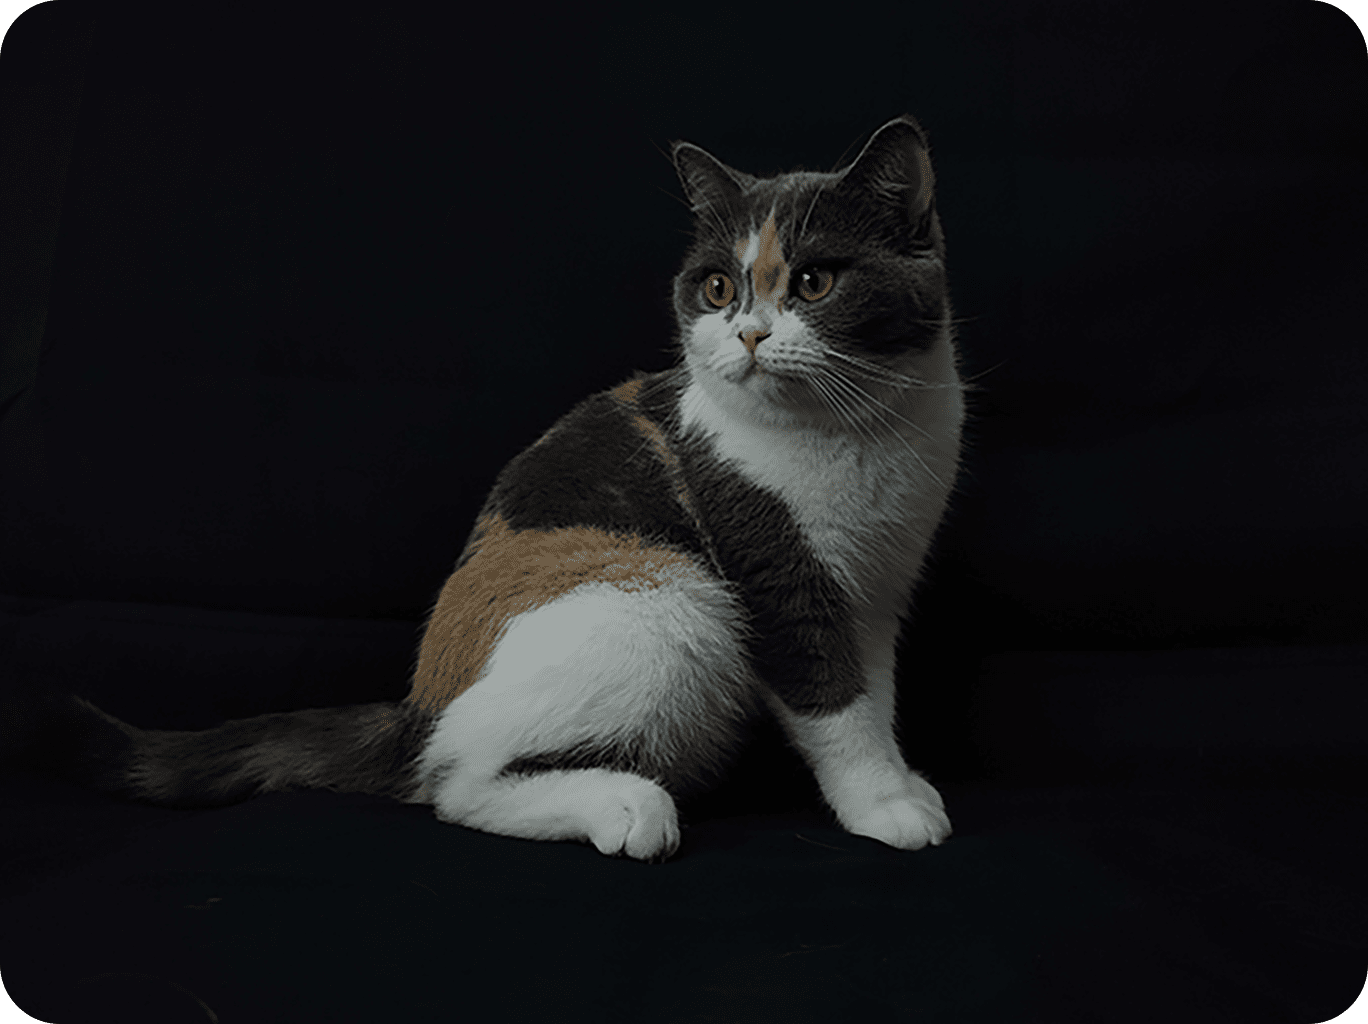 这是参与三星ISOCELL照片展的ISOCELL 2亿像素表现的超高画质黑色背景的猫咪全身照片。